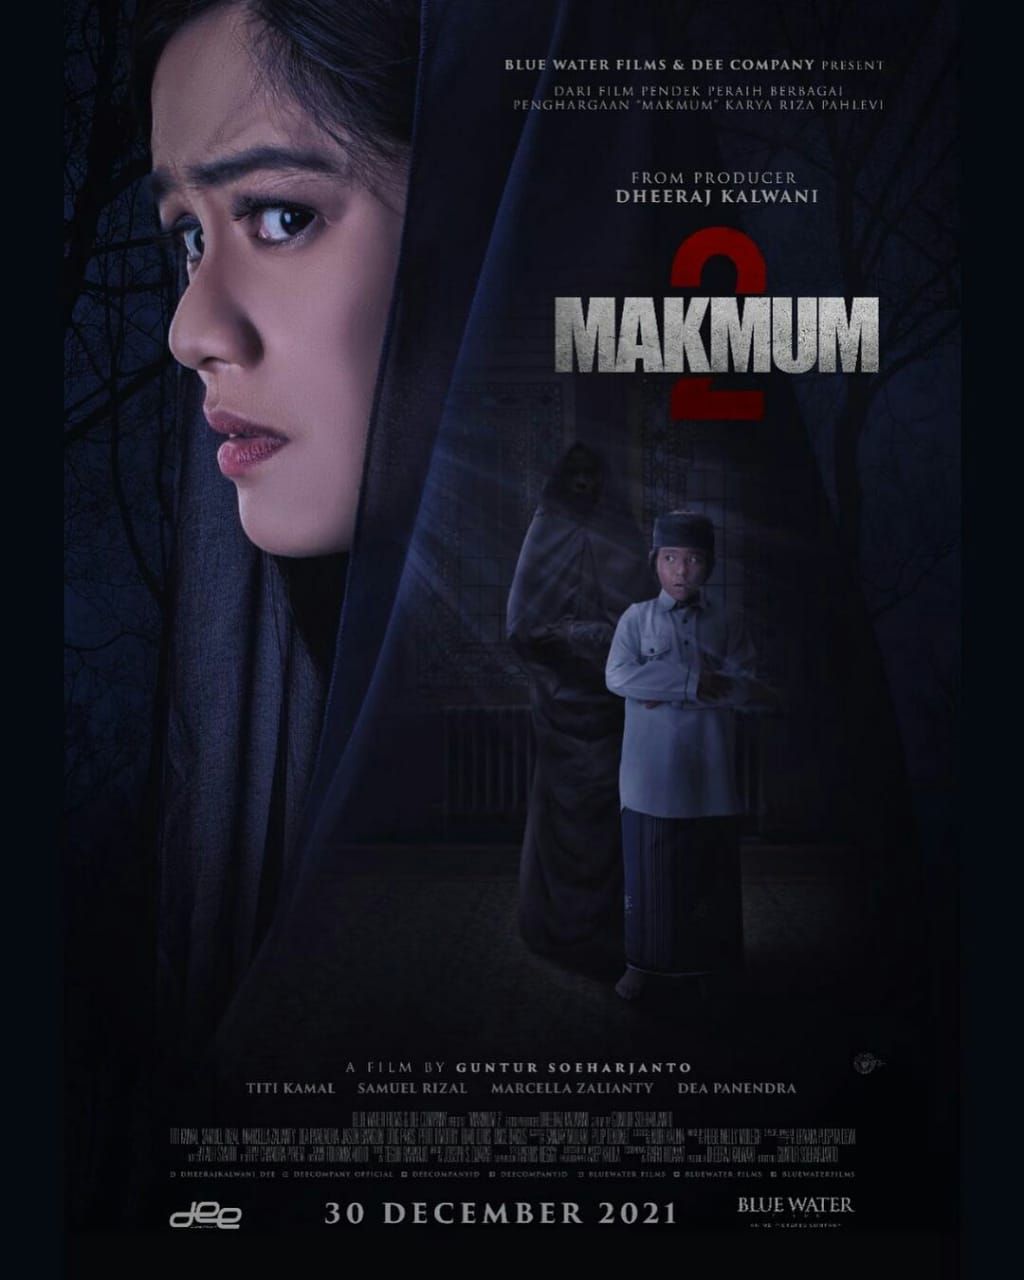 Sinopsis Film Makmum 2 Yang Akan Tayang 30 Desember 2021 Apakah Lebih Seram Dari Film Makmum 